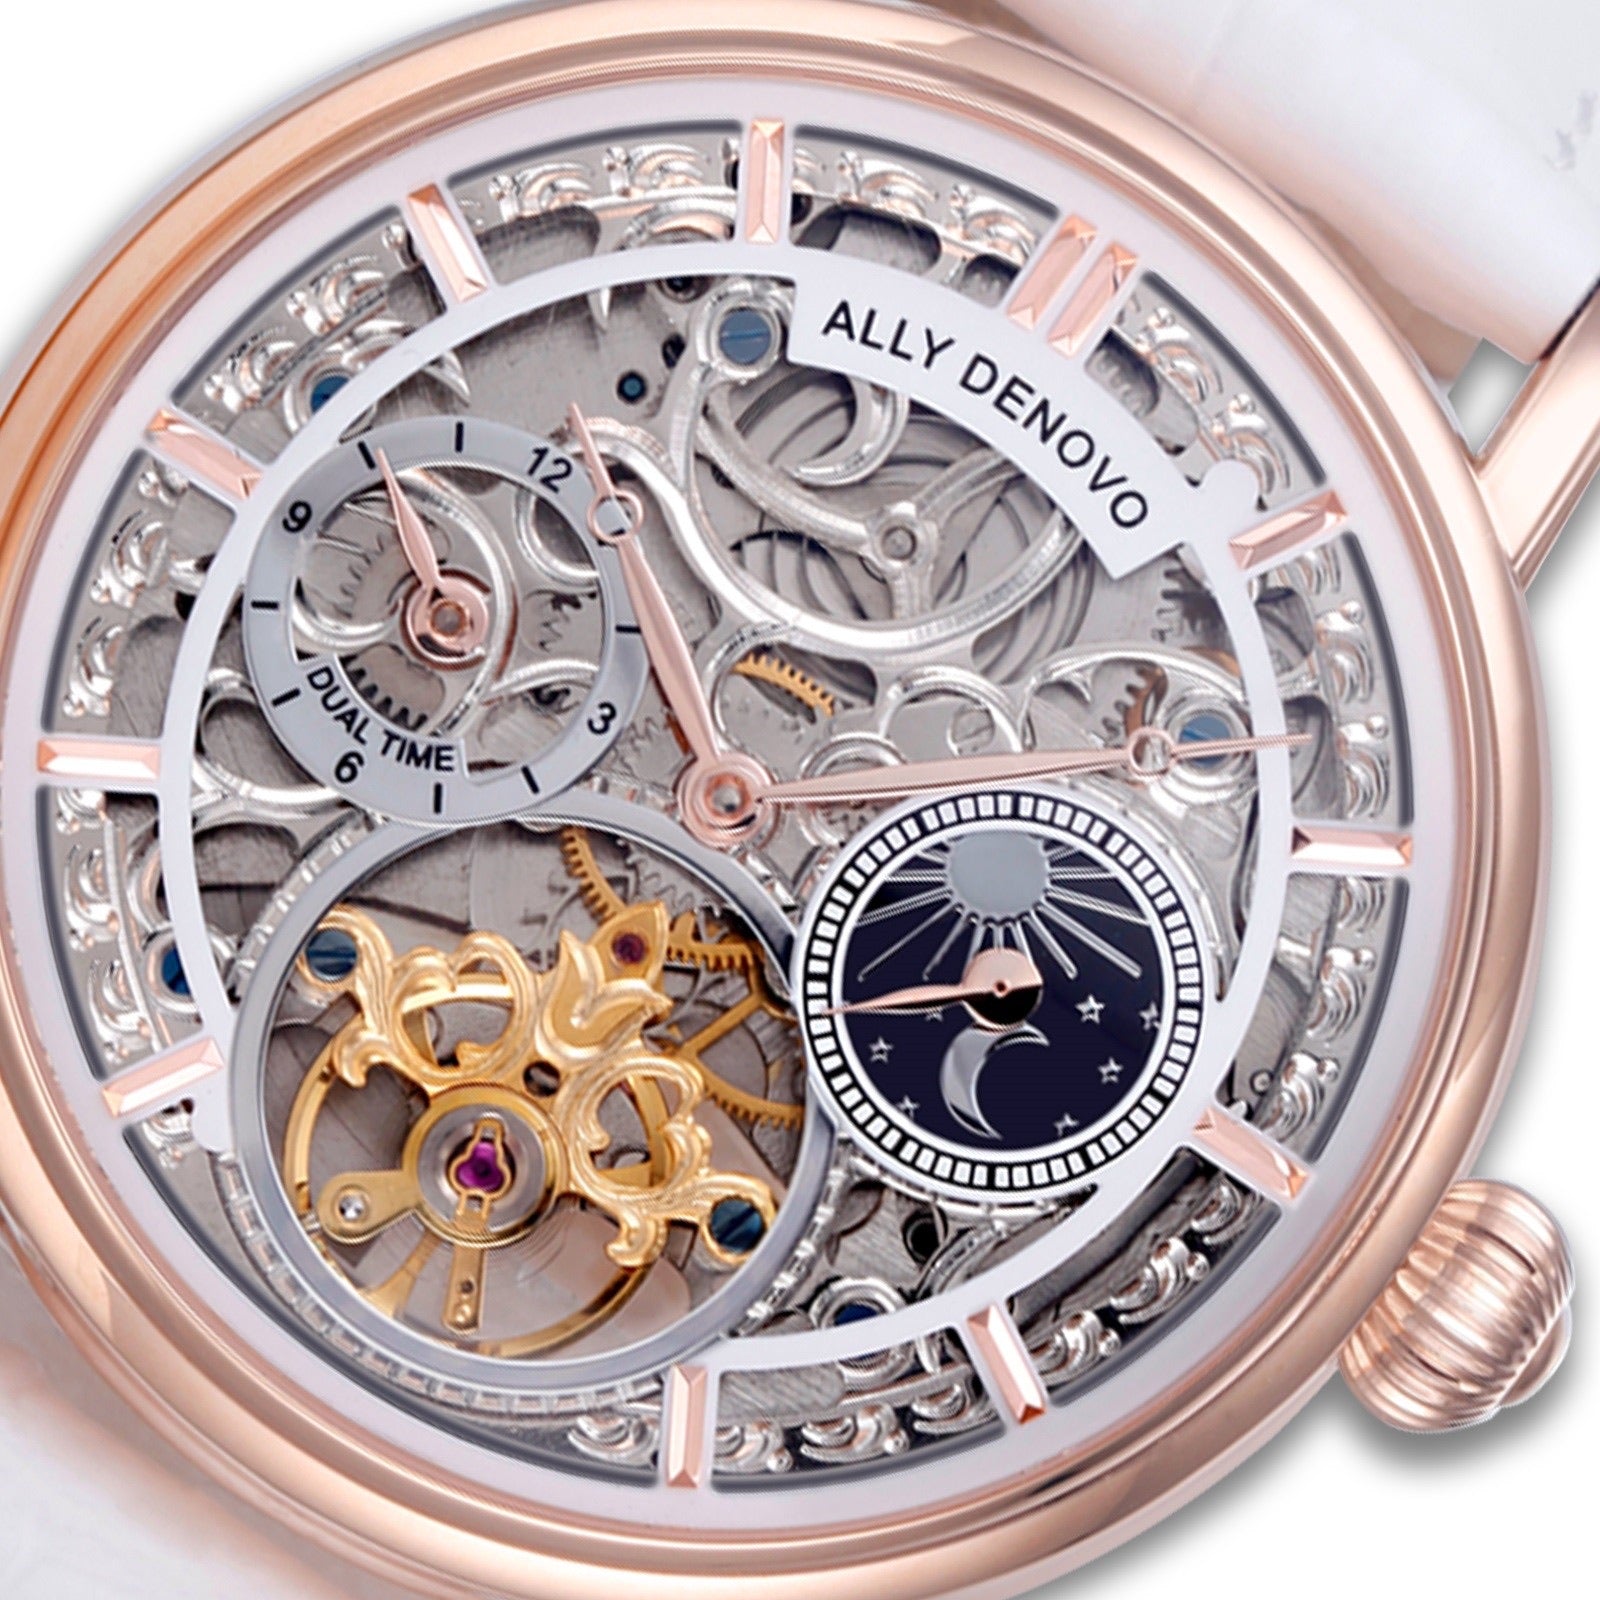 極光藝術星晨機械錶－玫瑰金框白鱷魚紋皮帶